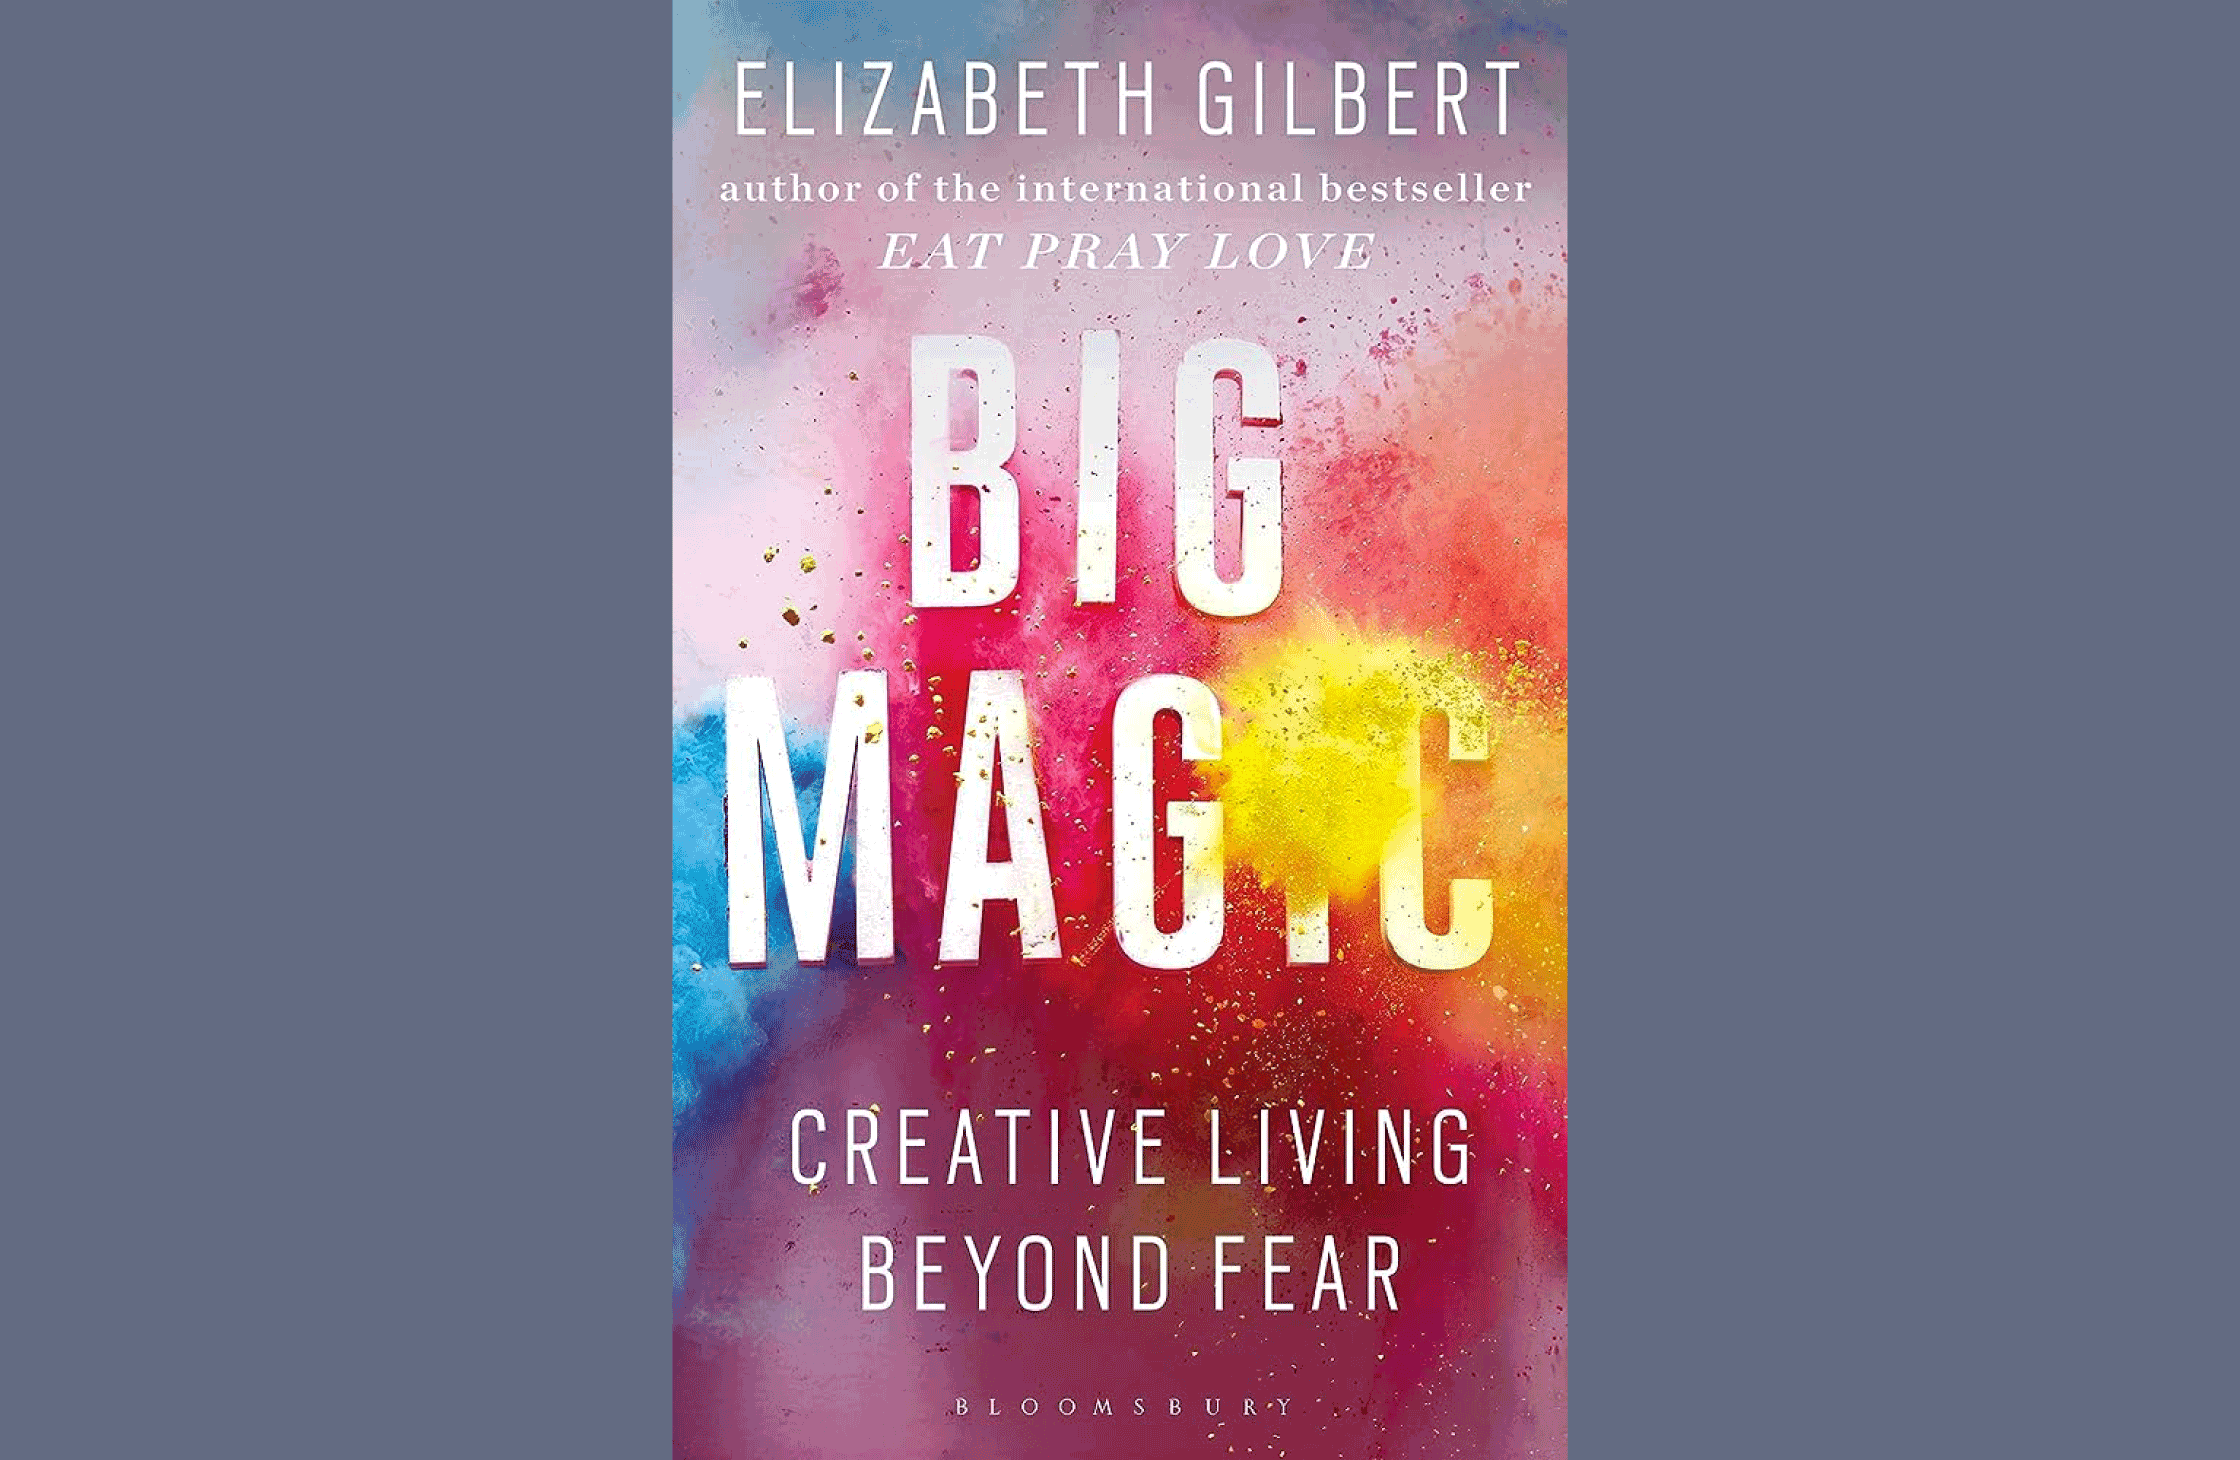 Summary: Big Magic: Creative Living Beyond Fear by Elizabeth Gilbert